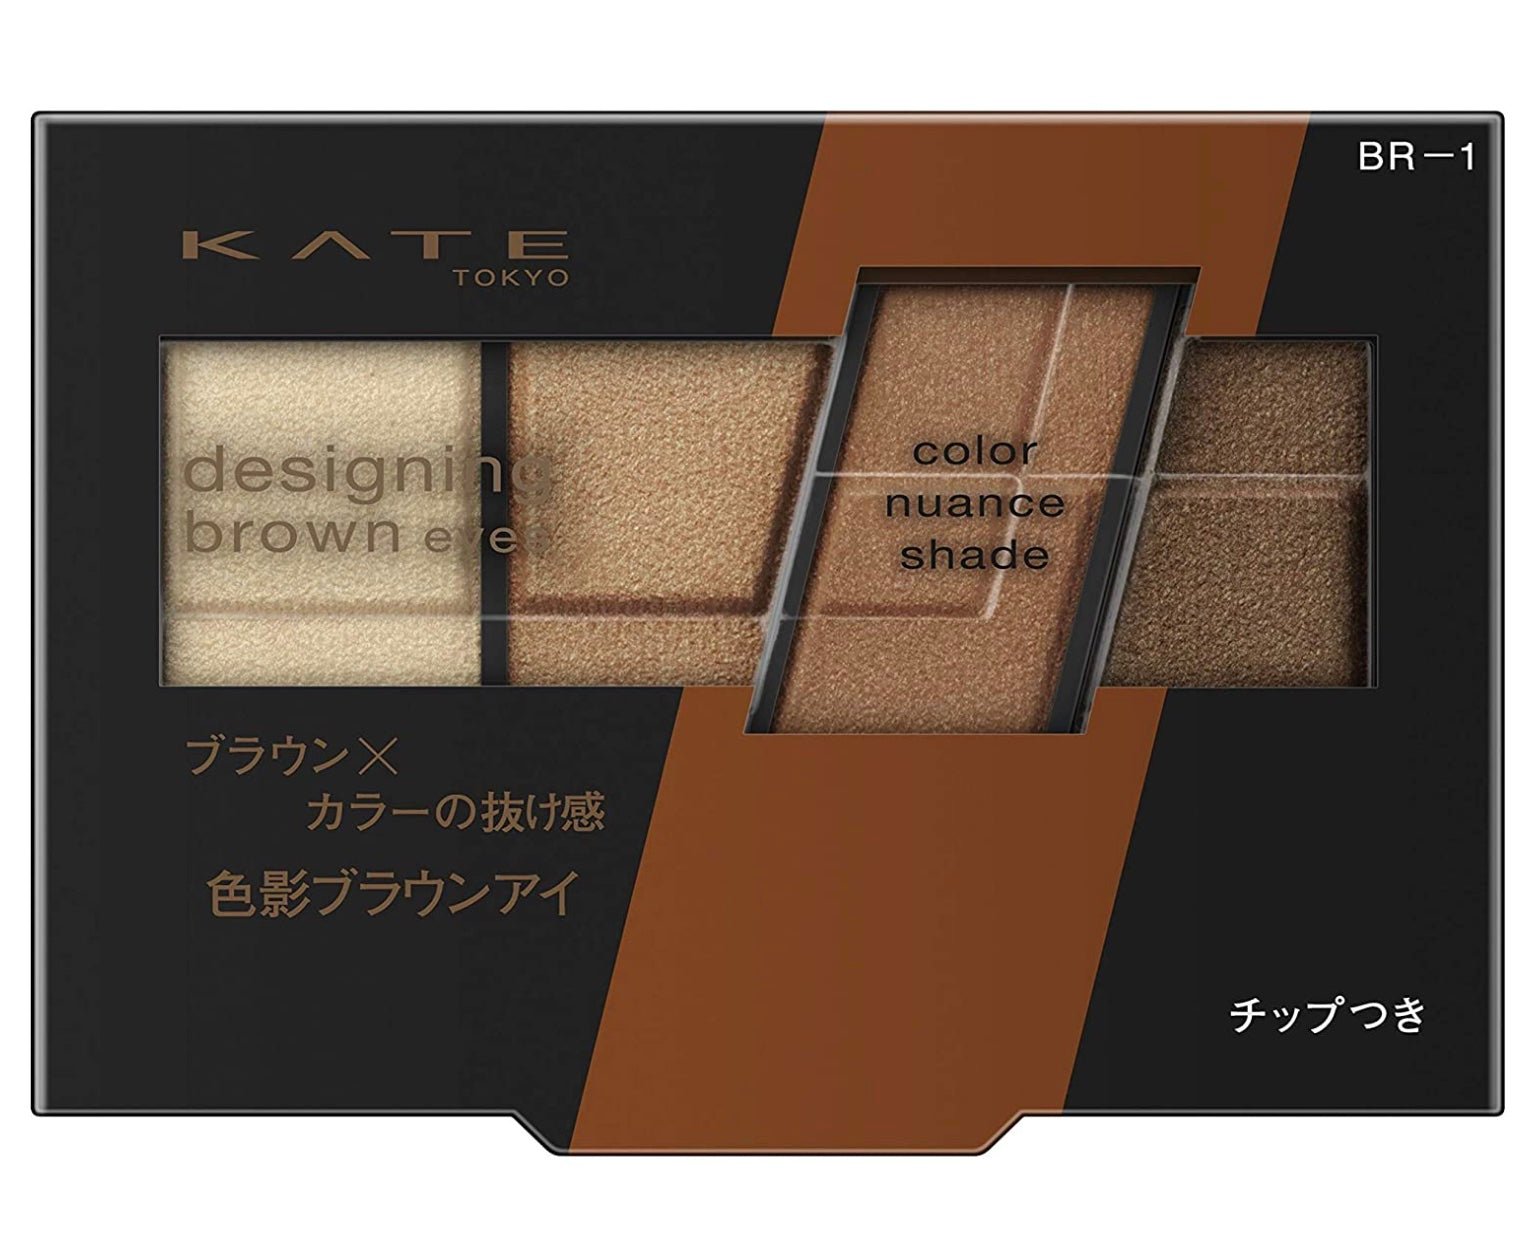 Kate Designing Brown Eyes - Ichiban Mart